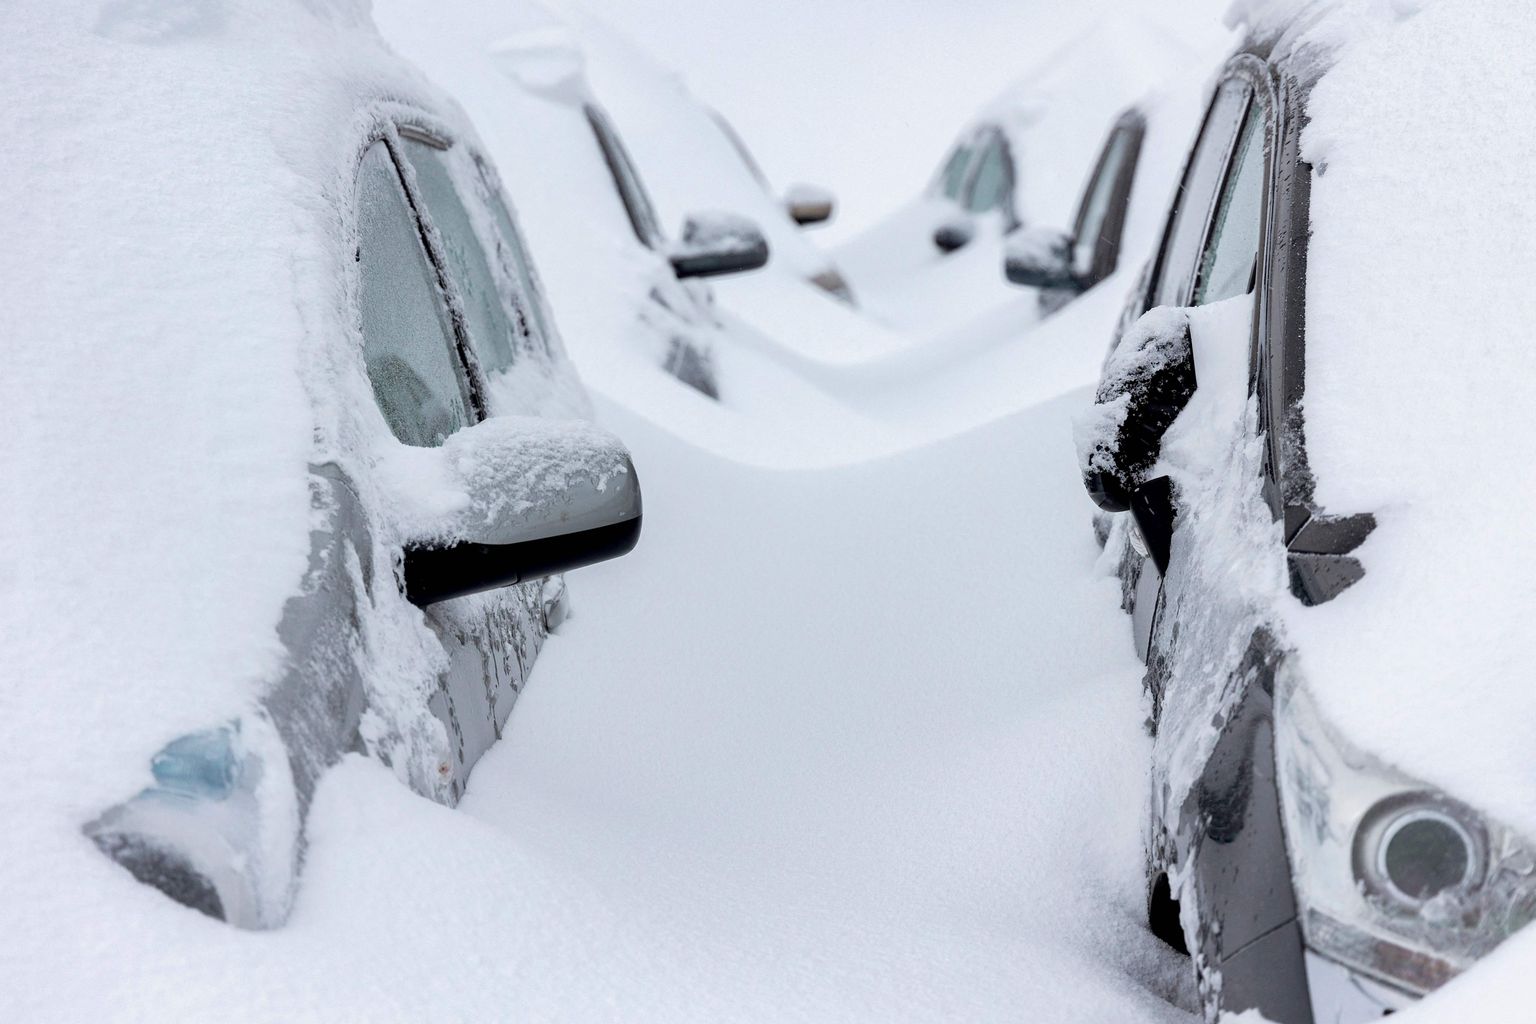 Sõiduautod 7. detsembril 2021 Euroopas lumest turritamas.